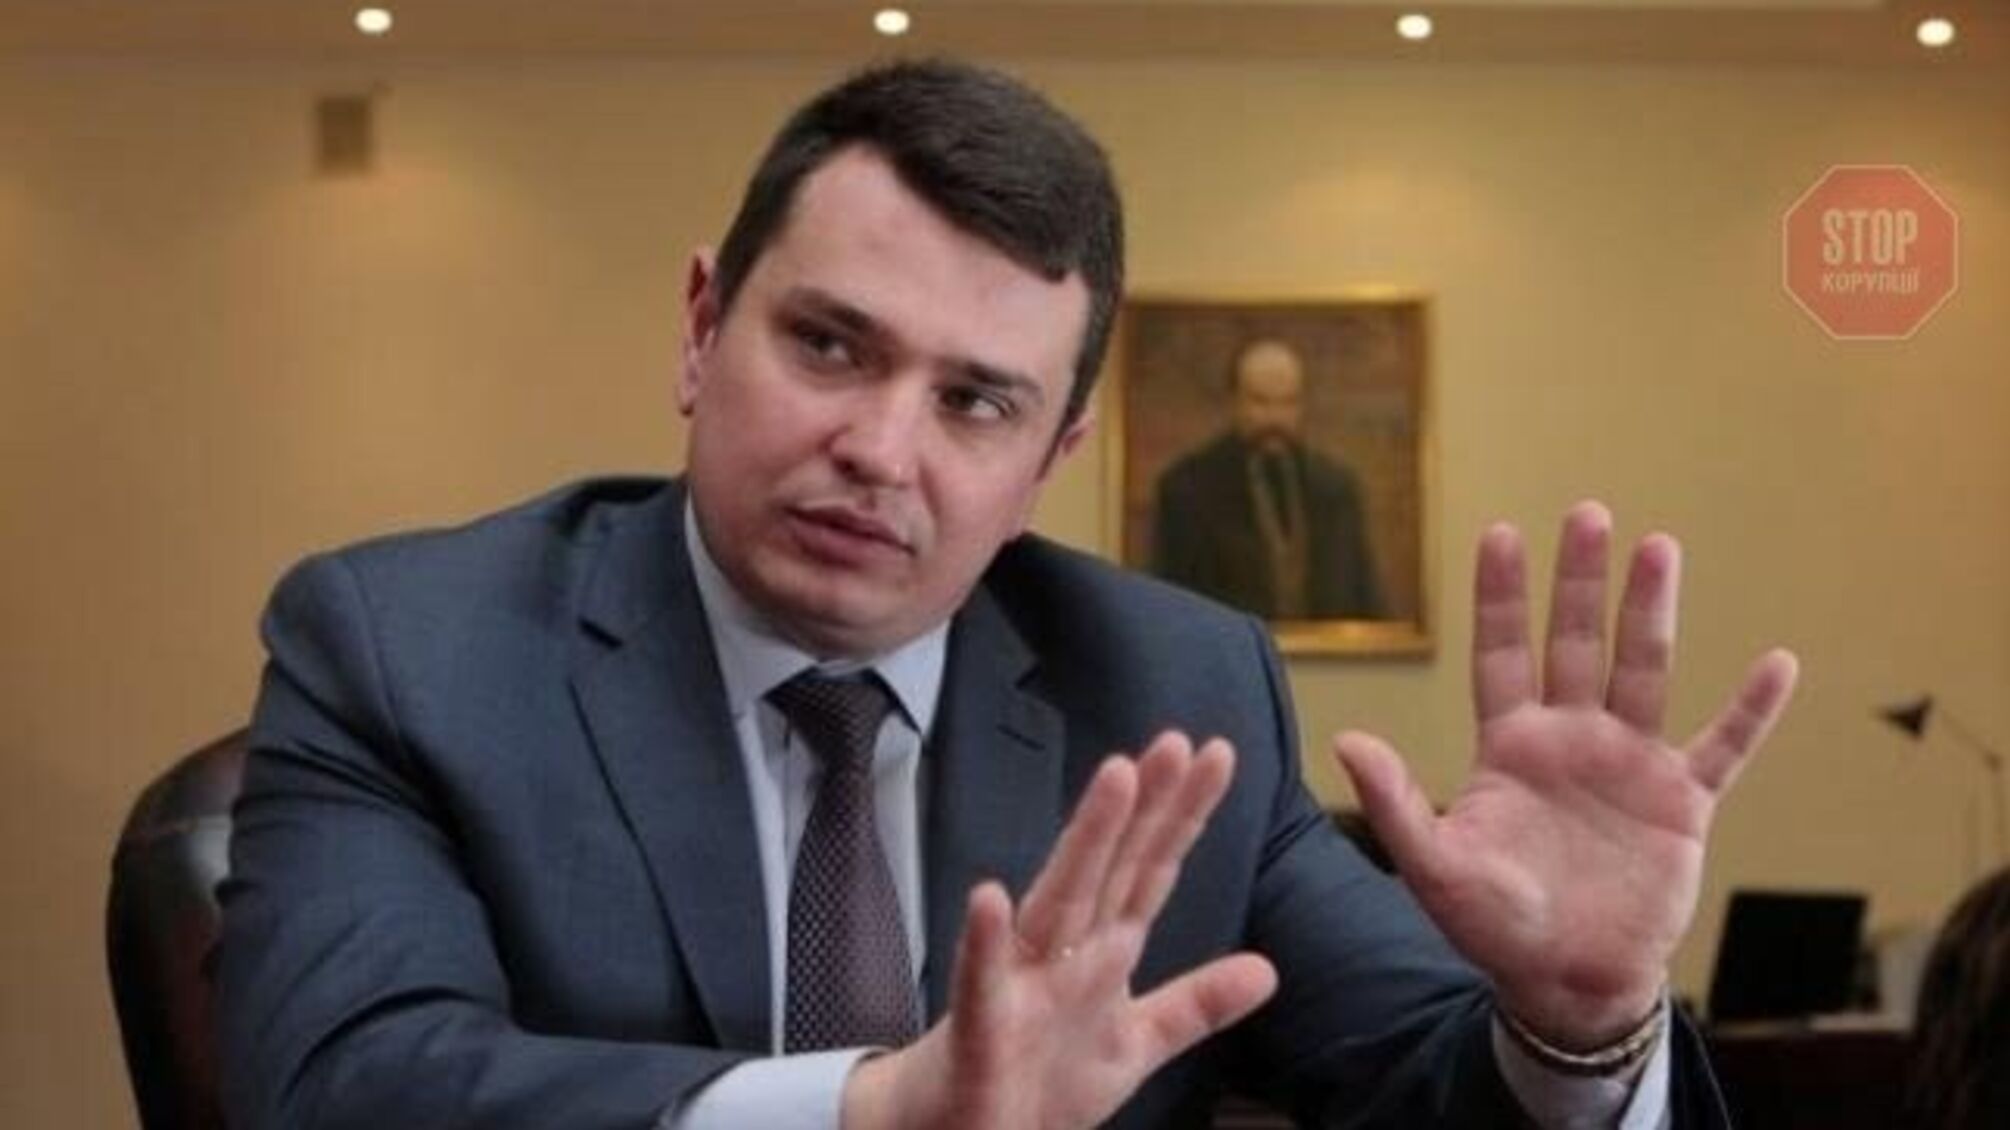 Ситник: 'Ми зафіксували слід української корупції у близько 80 країнах світу'